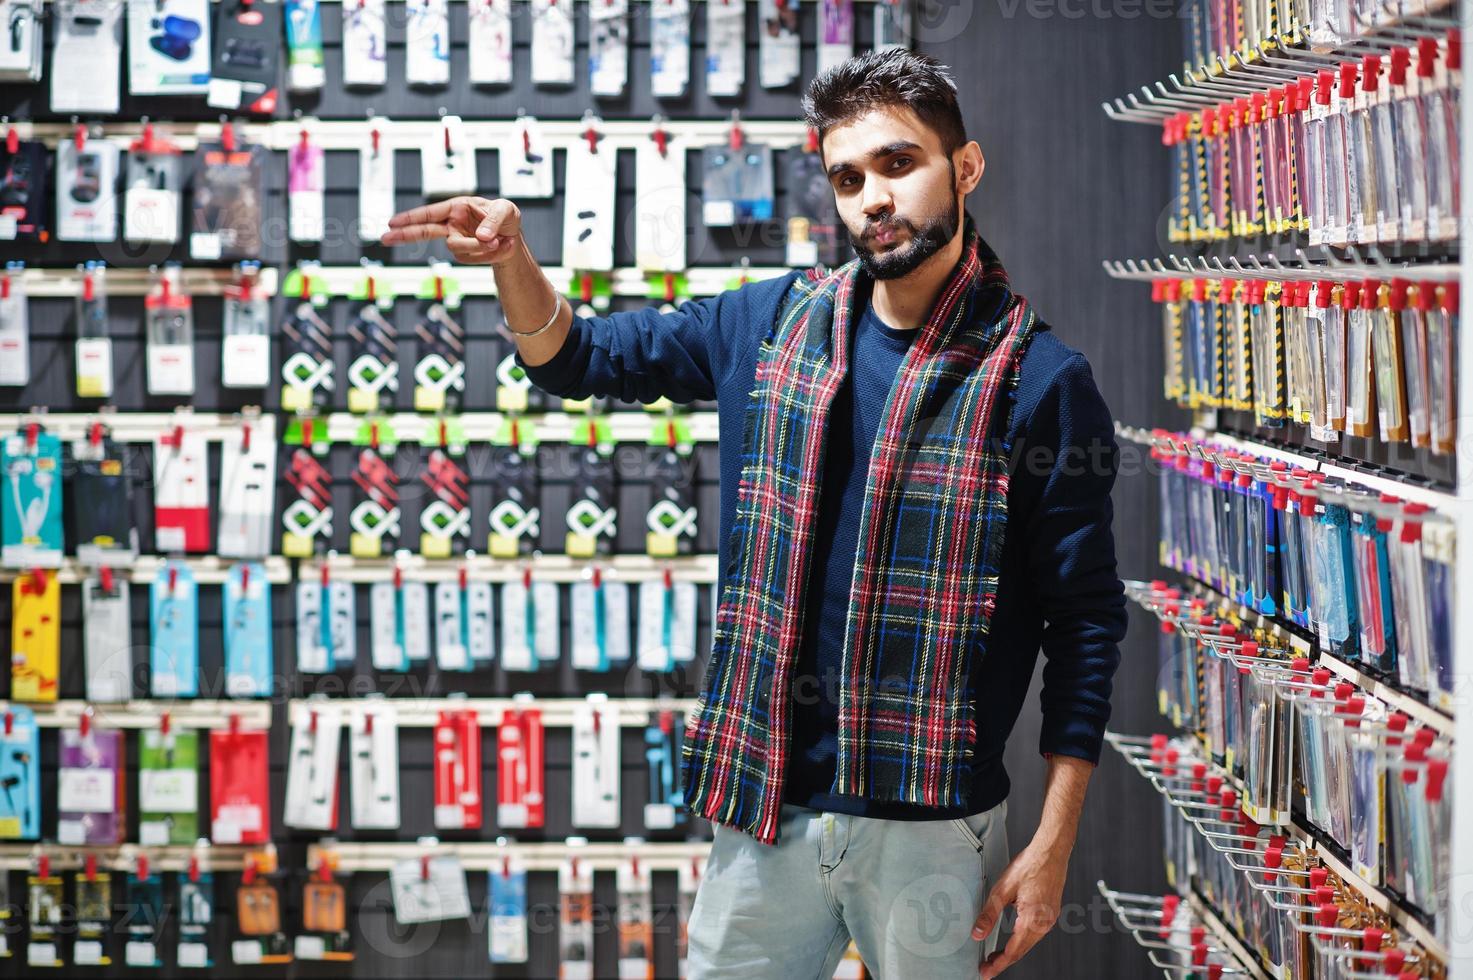 l'acquirente del cliente uomo indiano presso il negozio di telefoni cellulari sceglie una custodia per il suo smartphone. concetto di popoli e tecnologie dell'Asia meridionale. negozio di cellulari. foto